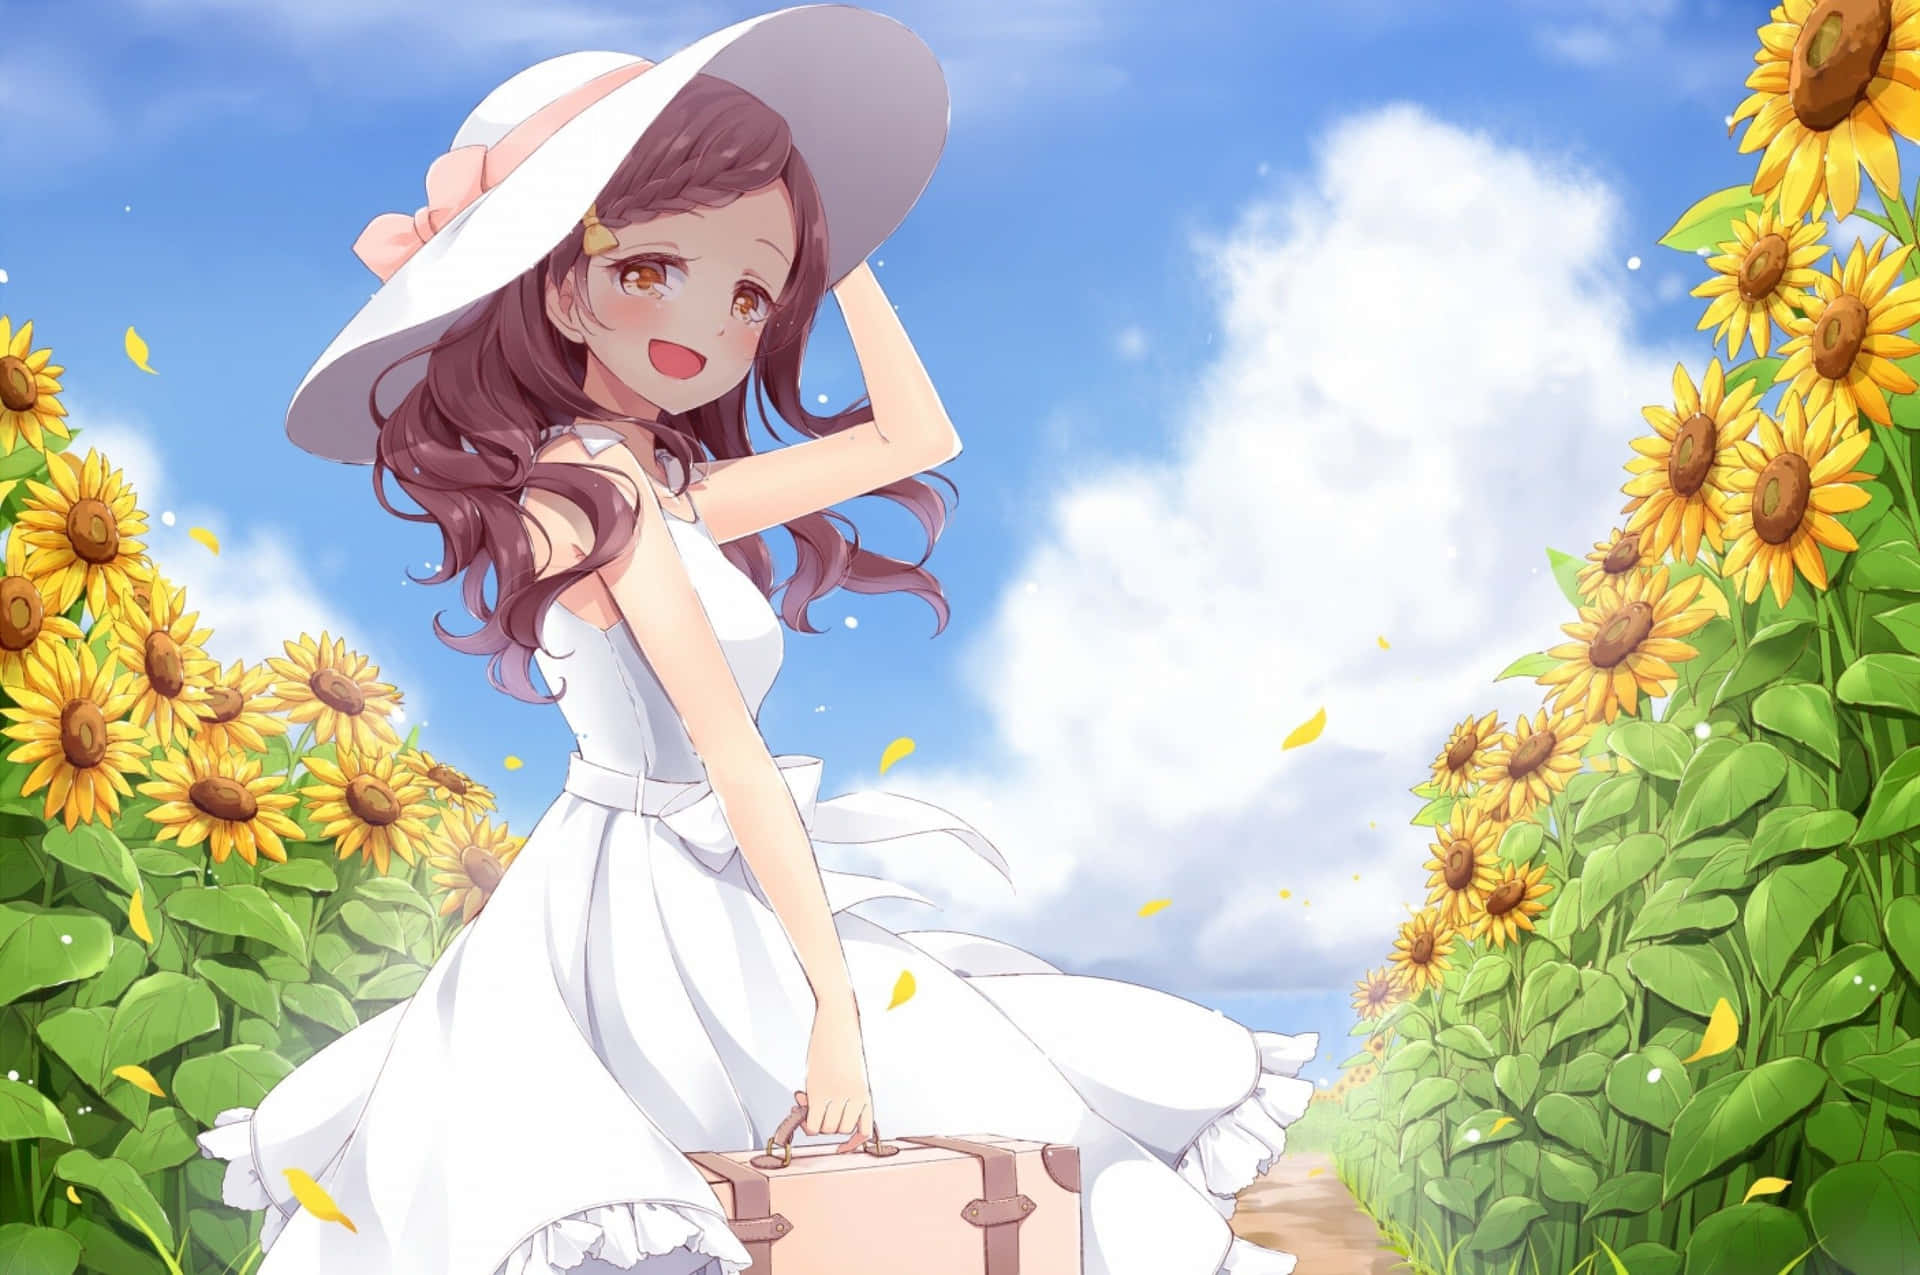 Summer Journey Anime Girl.jpg Wallpaper